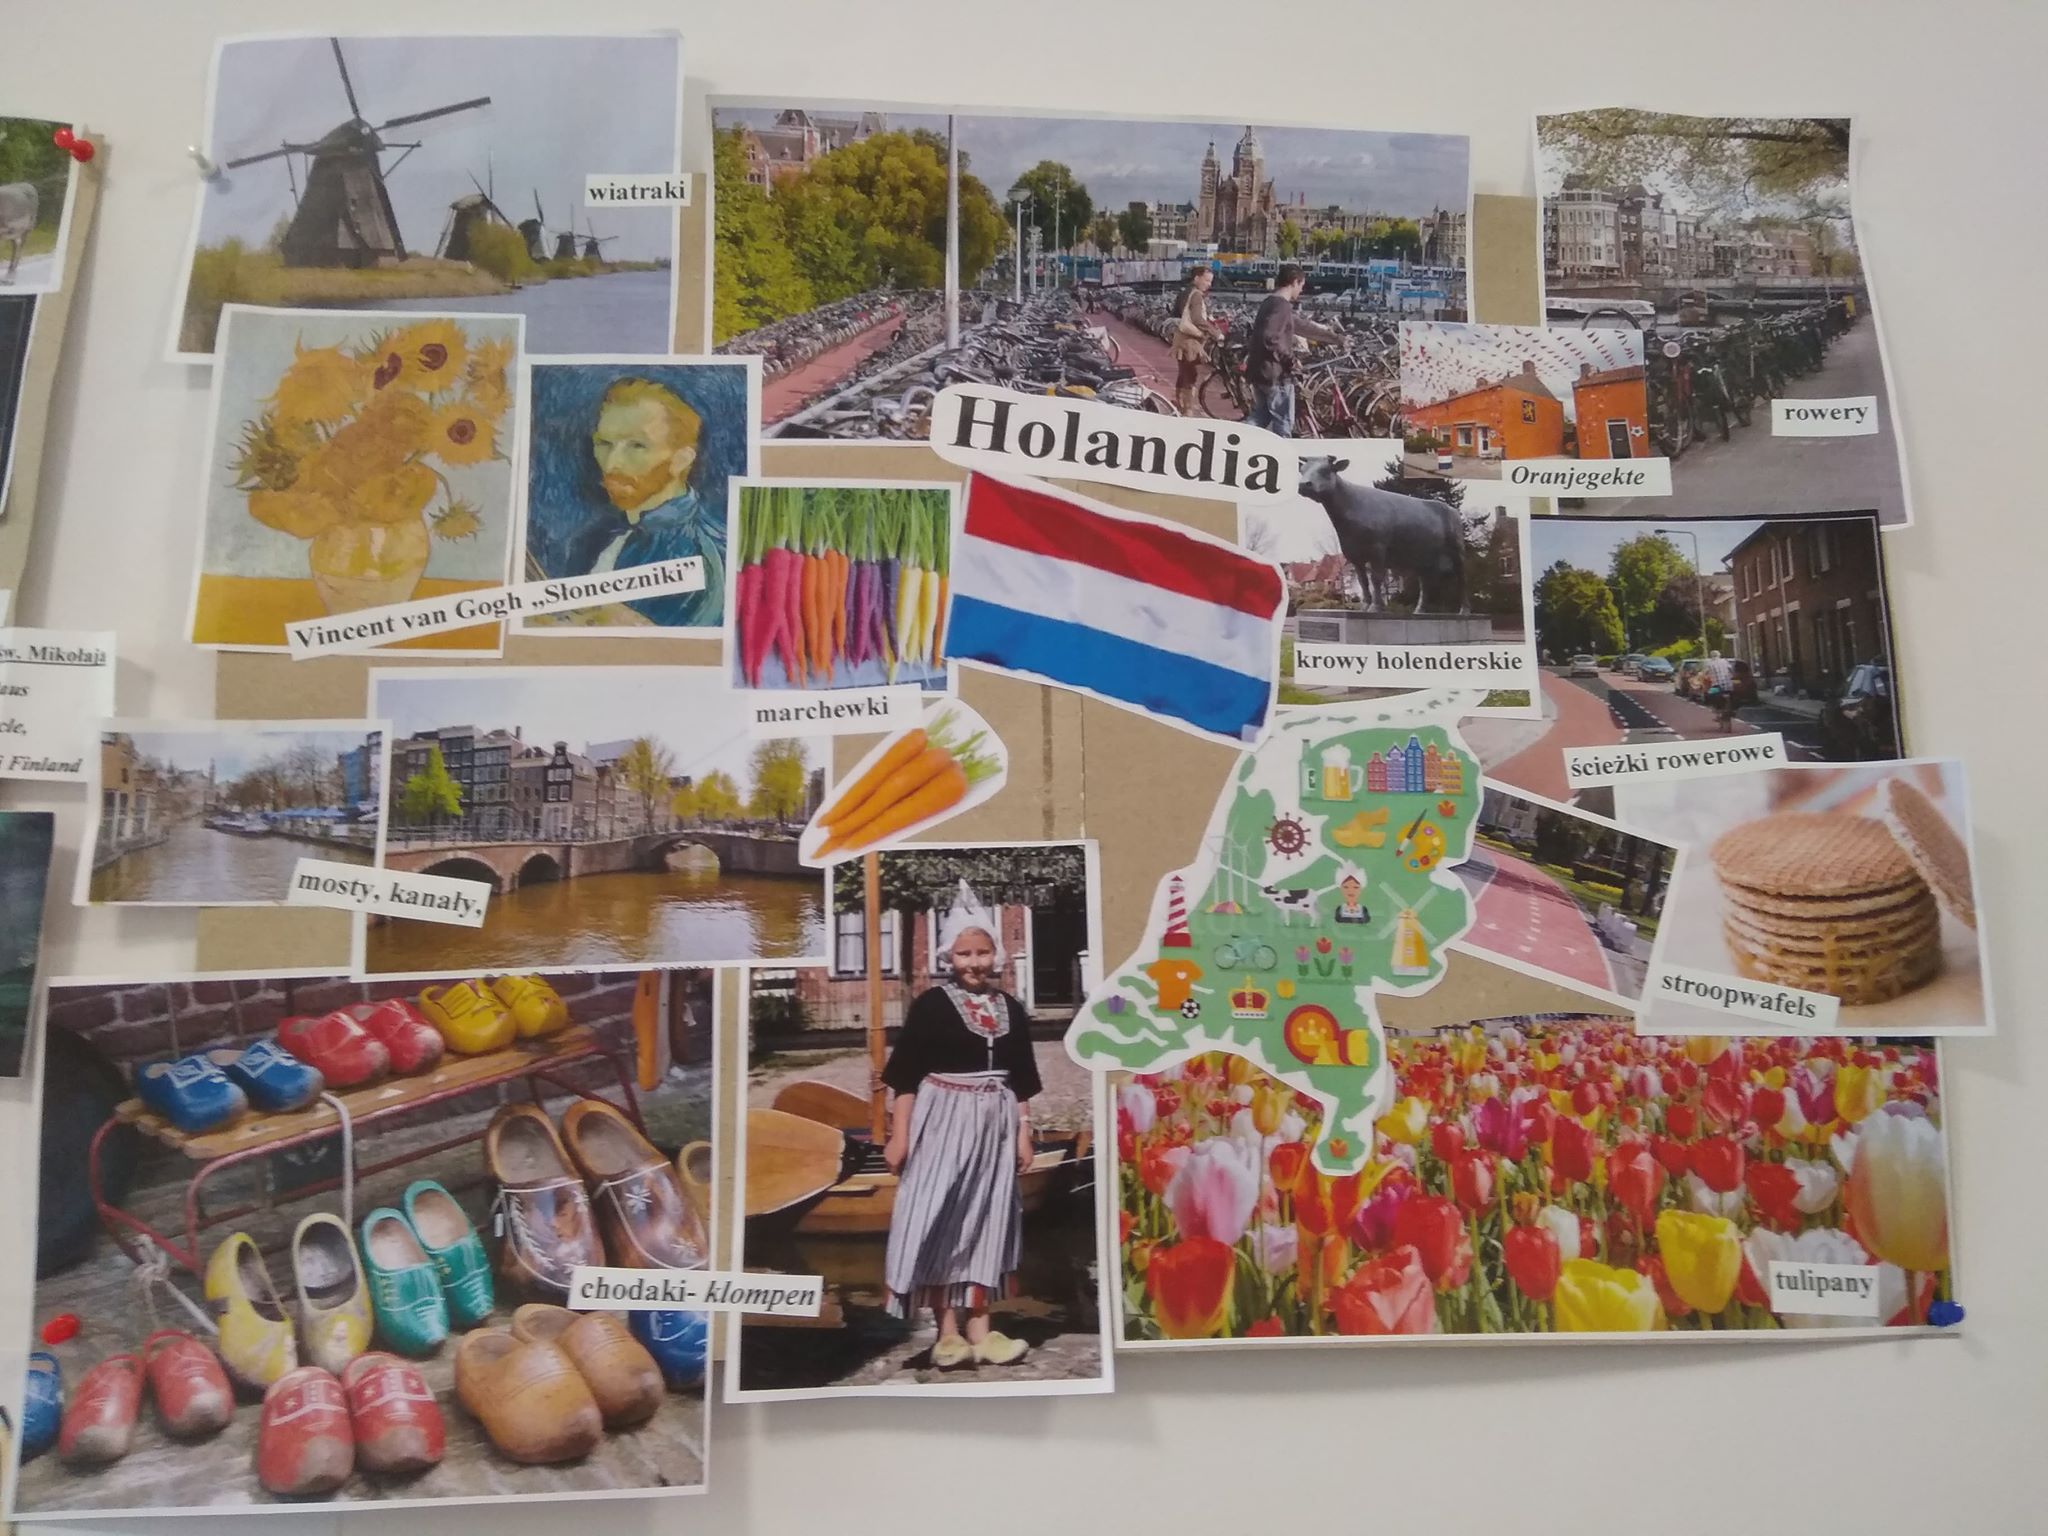 Hallo, Hoi, Holla! ...Sery, rowery i tulipany  - wszystkie te rzeczy w Holandii spotkamy.